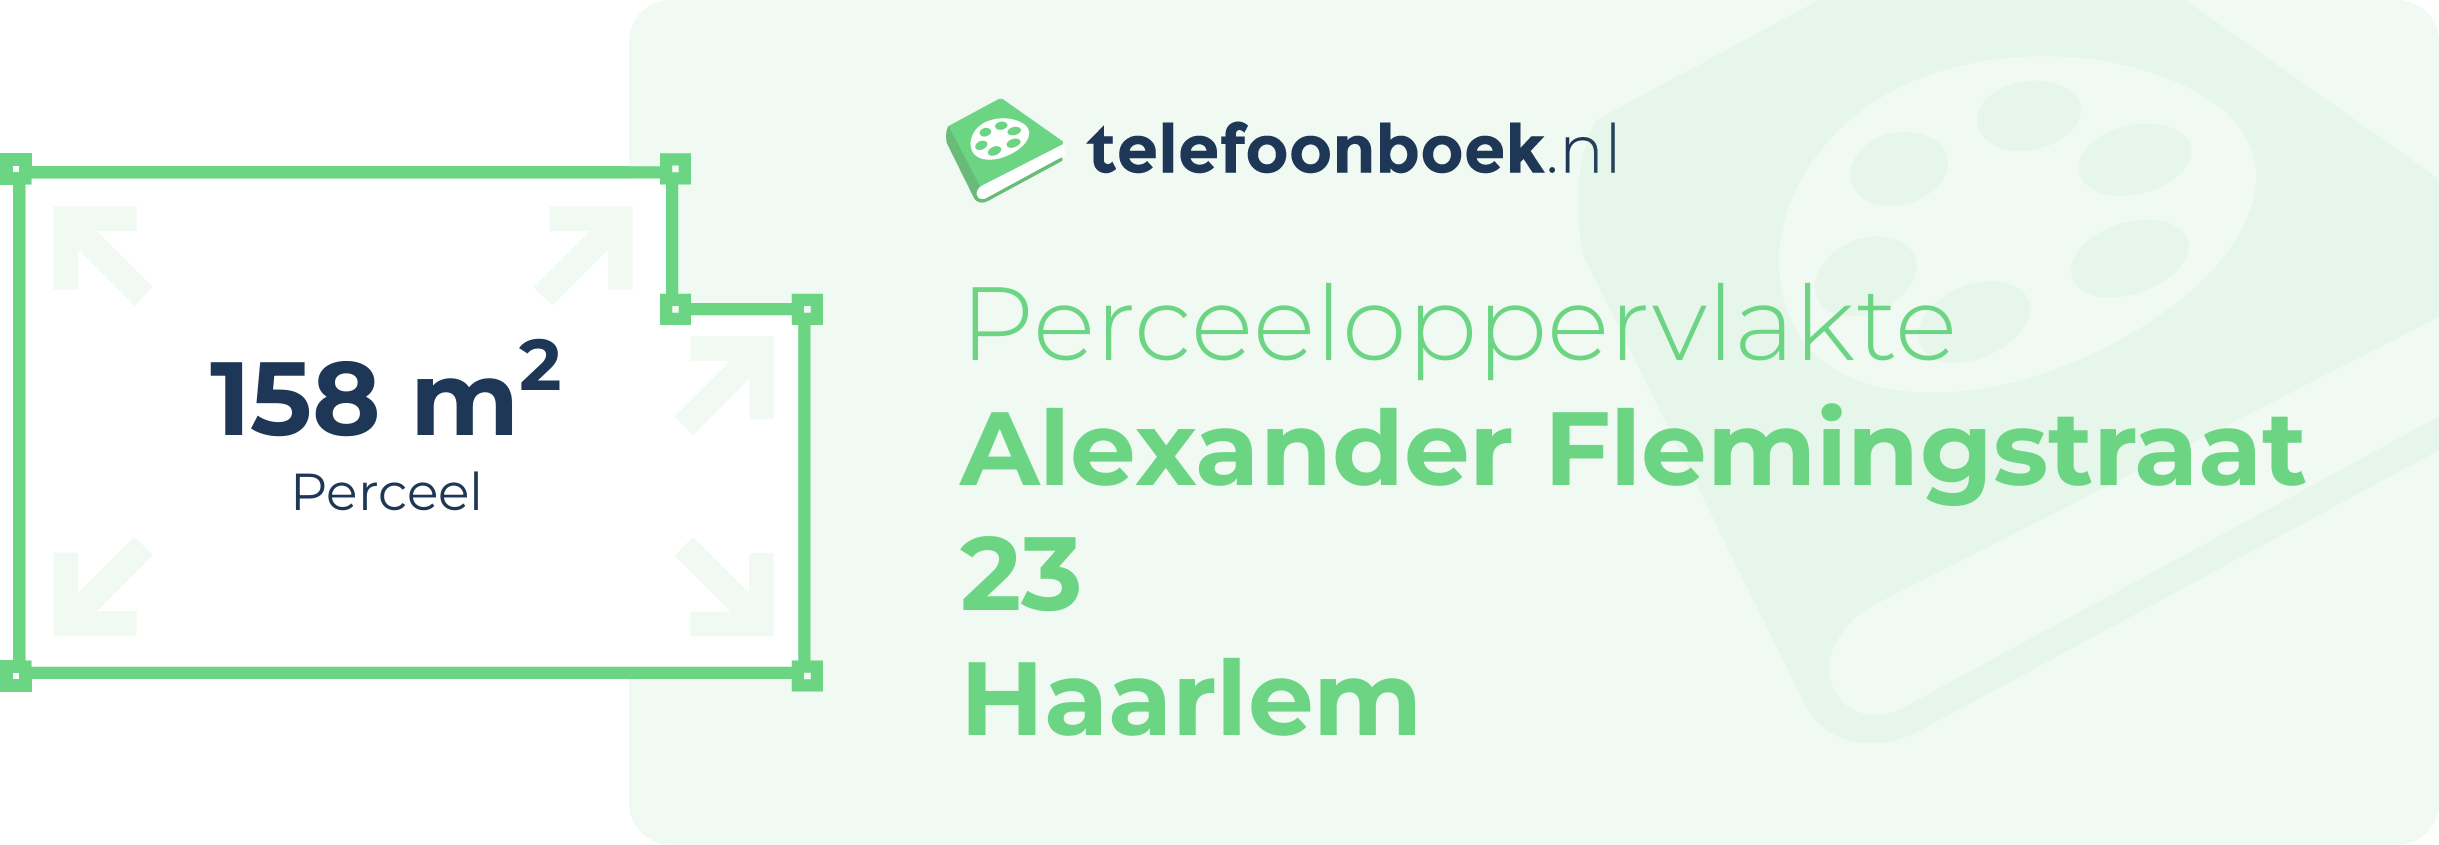 Perceeloppervlakte Alexander Flemingstraat 23 Haarlem